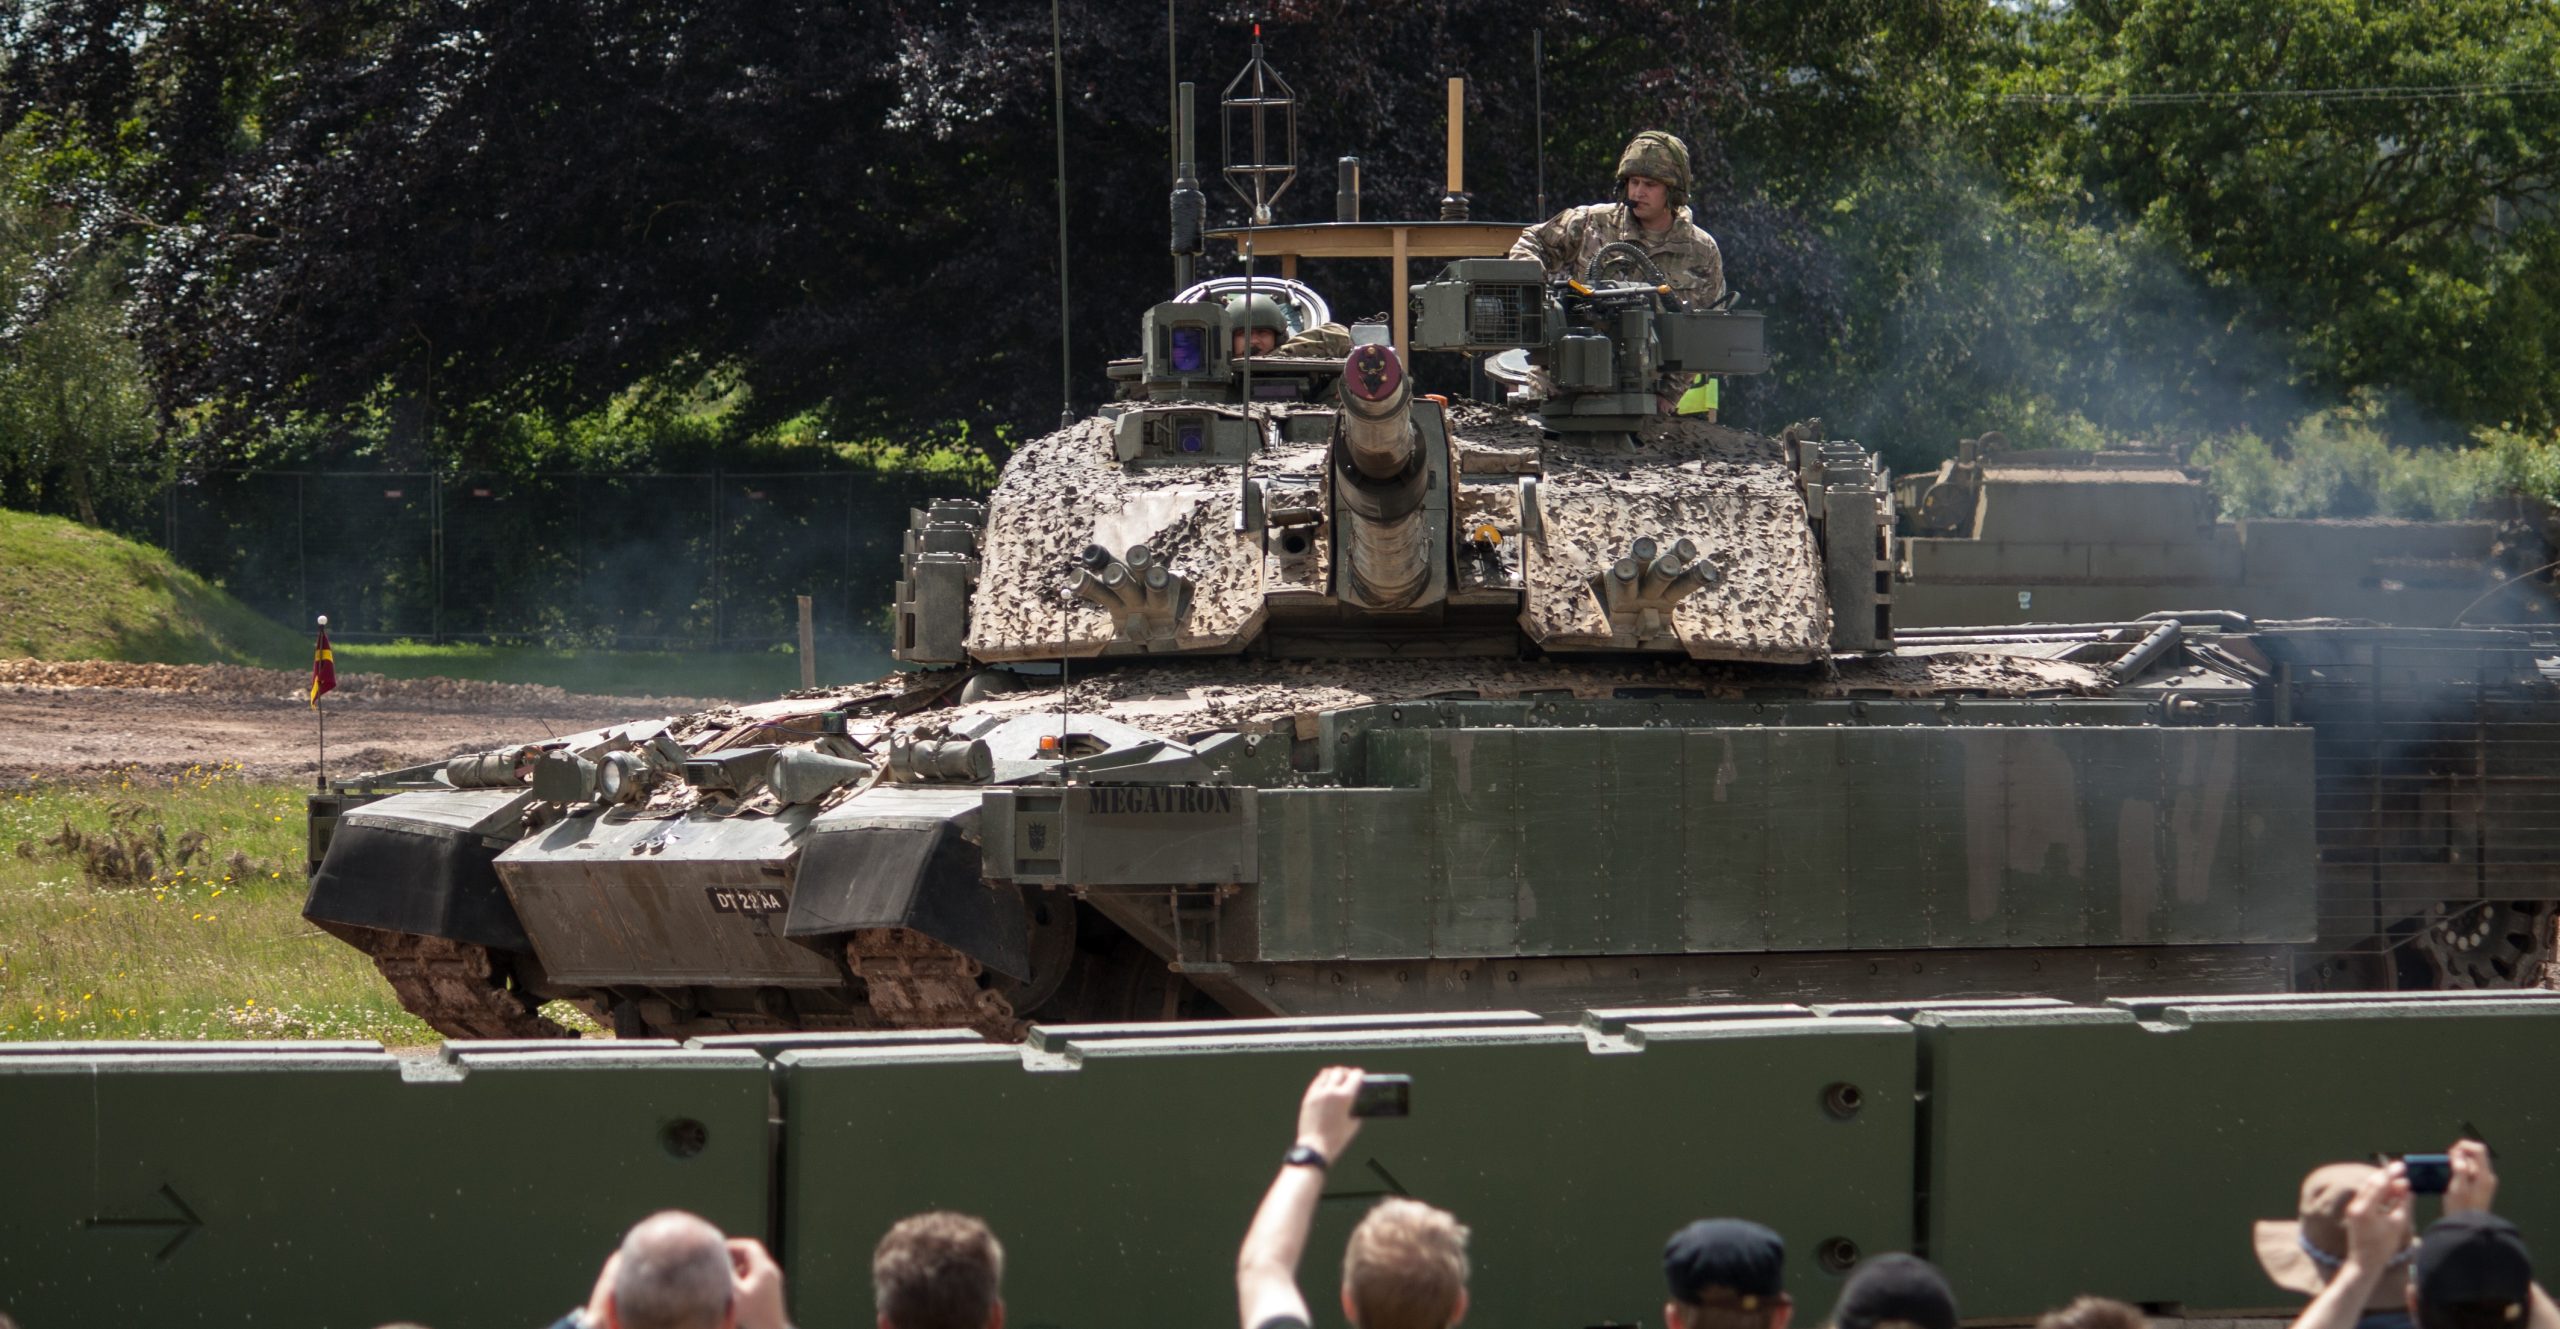 Άρματα μάχης Challenger 2 στέλνει η Βρετανία  10 χλμ. από  τα σύνορα με την Ουκρανία! – Με μαζικές ενισχύσεις  απαντά η Ρωσία